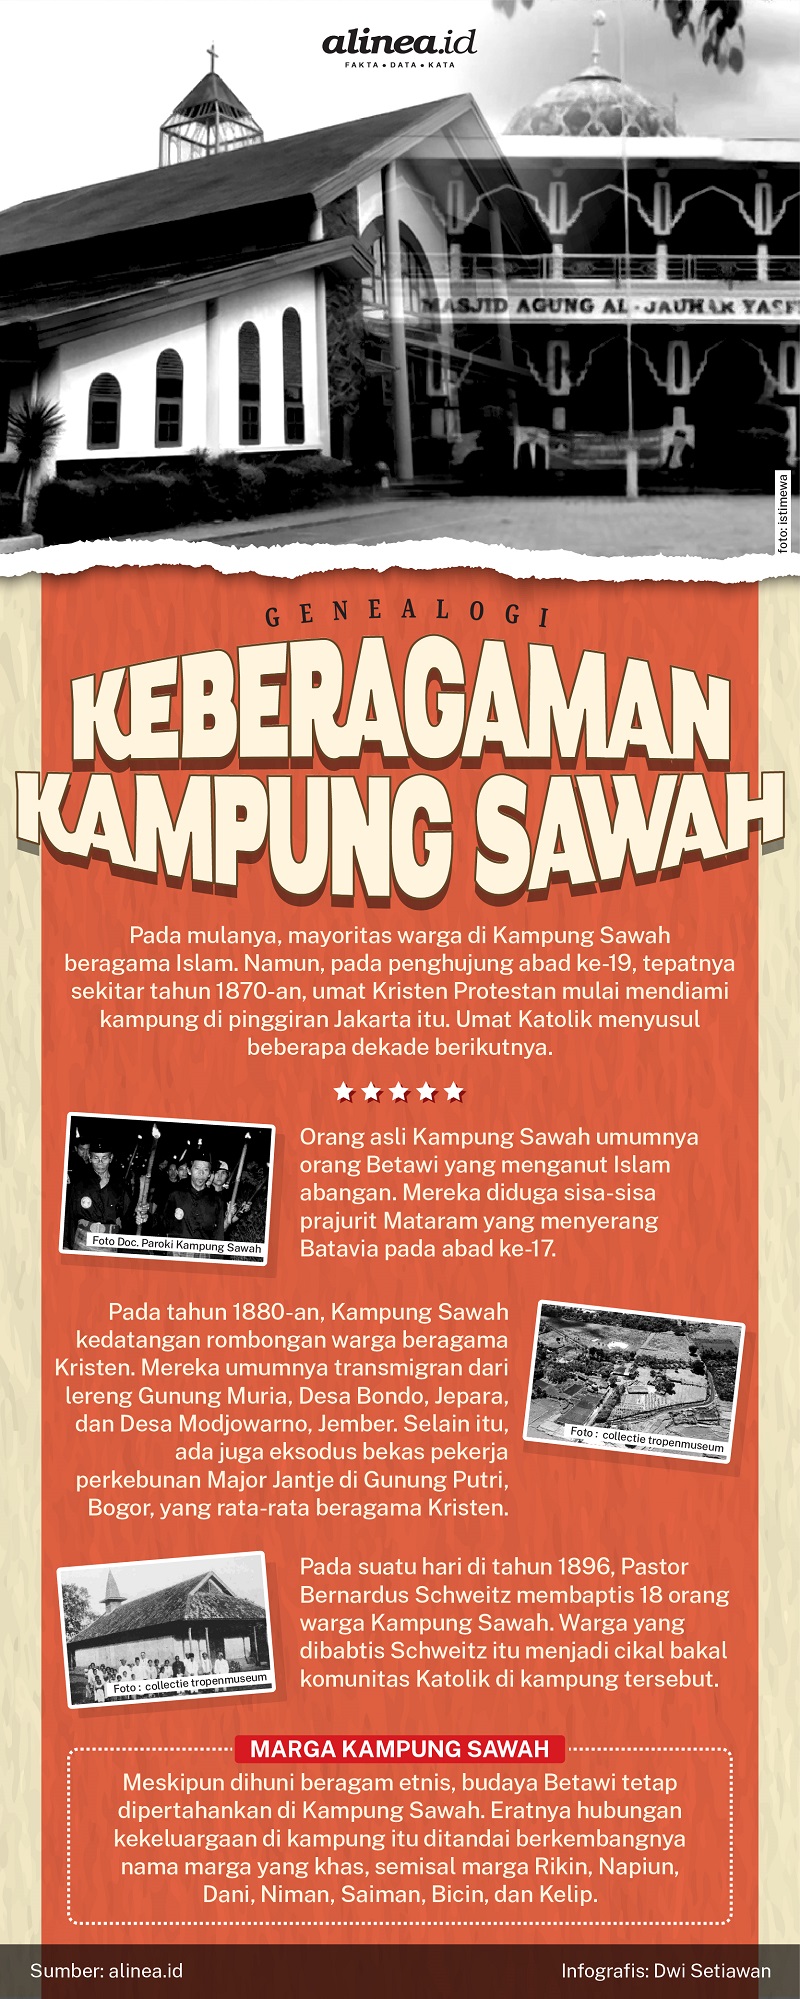 Infografik keberagaman di Kampung Sawah, Bekasi, Jawa Barat. Alinea.id/Dwi Setiawan